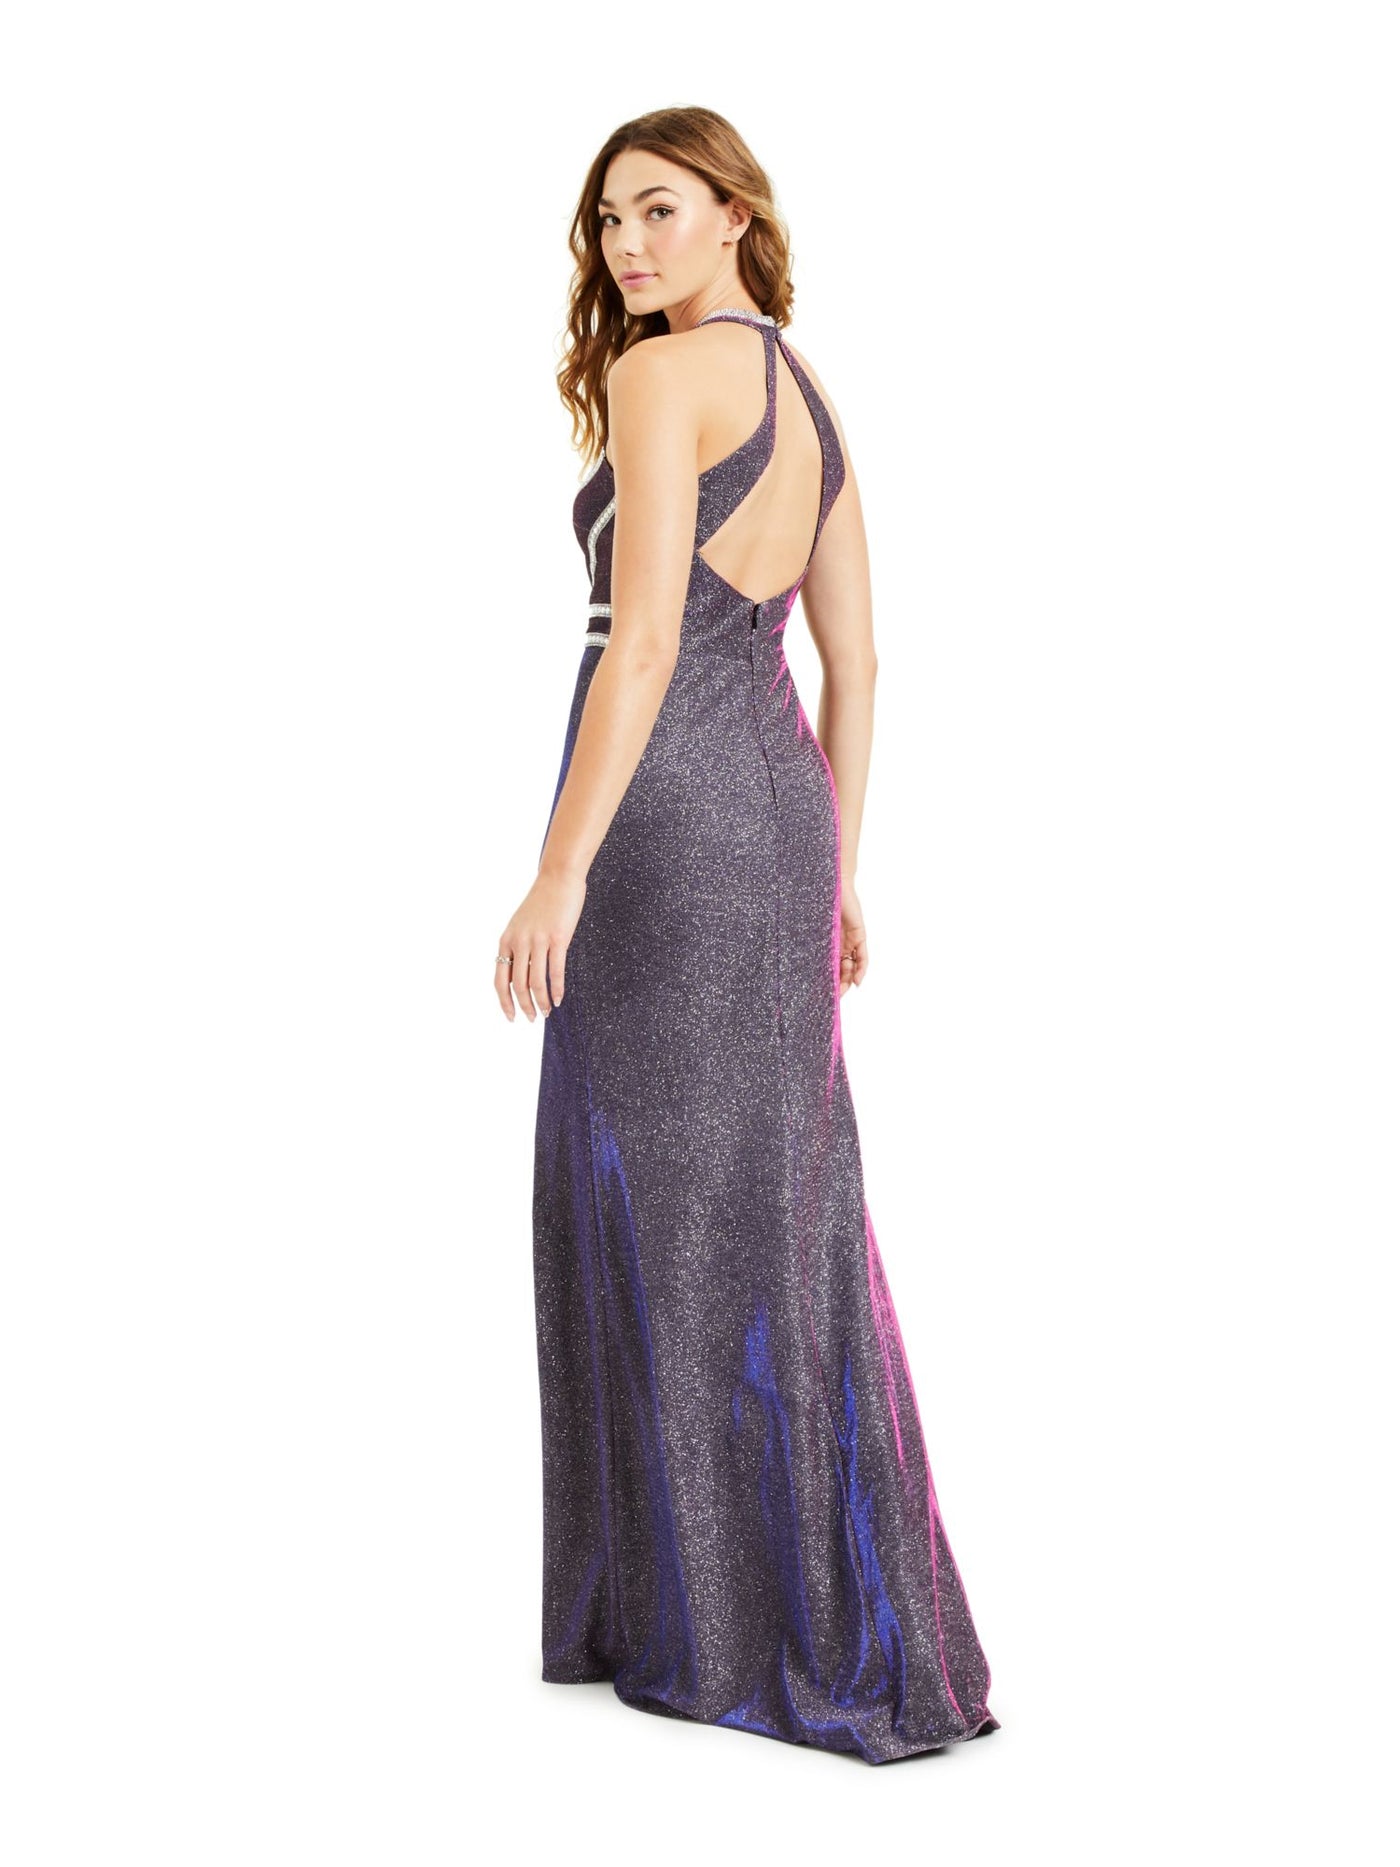 BLONDIE Womens Purple Glitter Embellished Slitted Gown Sleeveless V Neck Full-Length Prom Dress Juniors 1